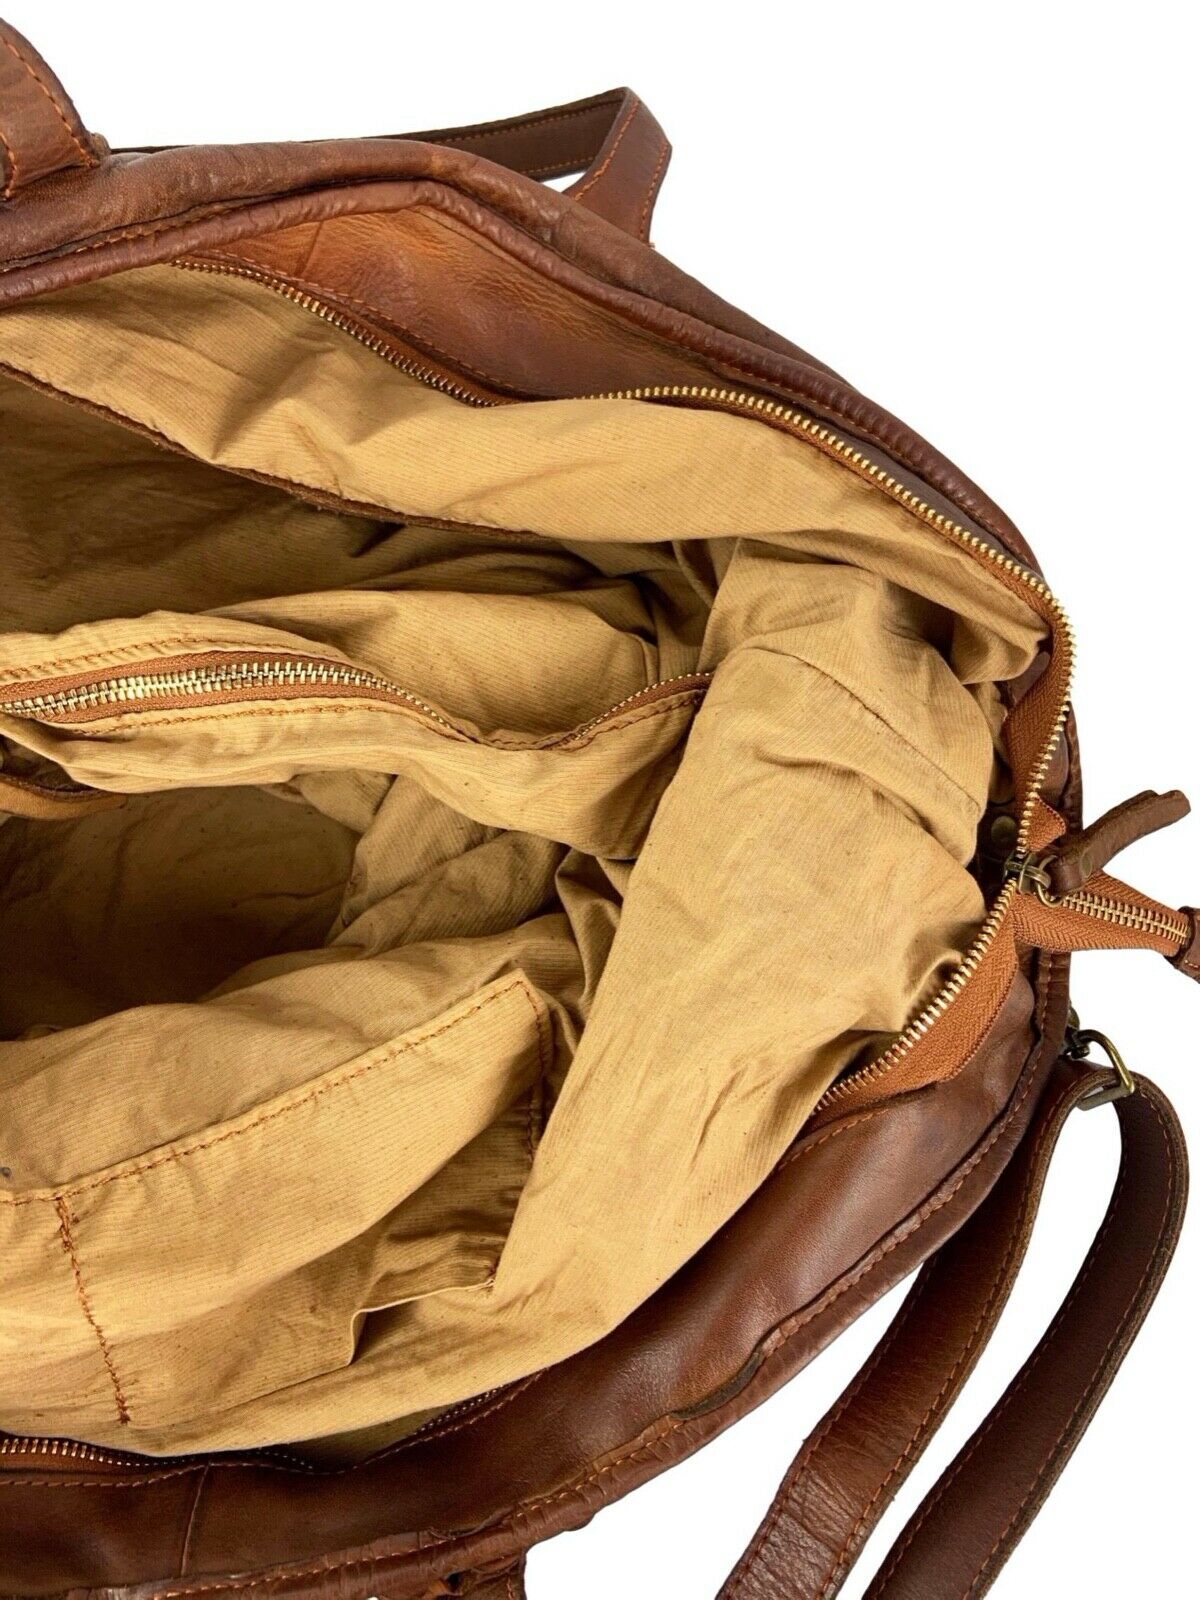 BZNA Bag Patti Schwarz Italy Vintage Schultertasche Designer Handtasche Leder